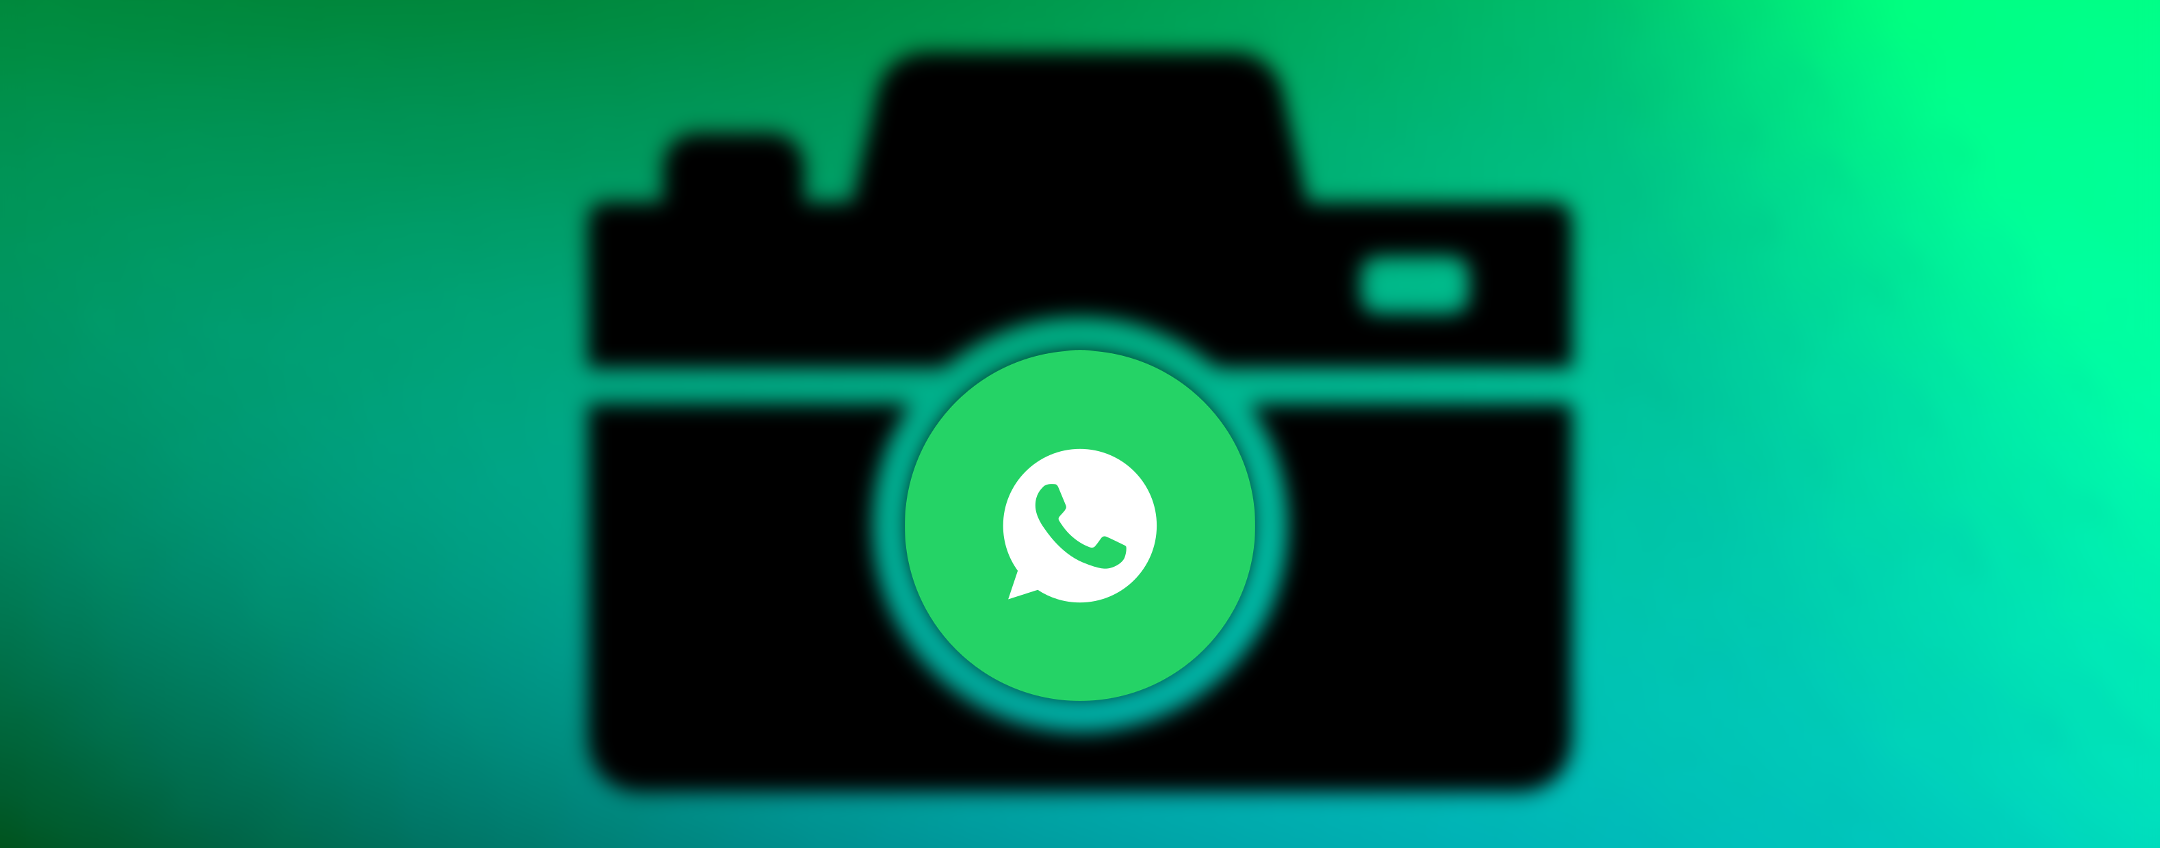 WhatsApp: il trucco per inviare foto senza perdere qualità